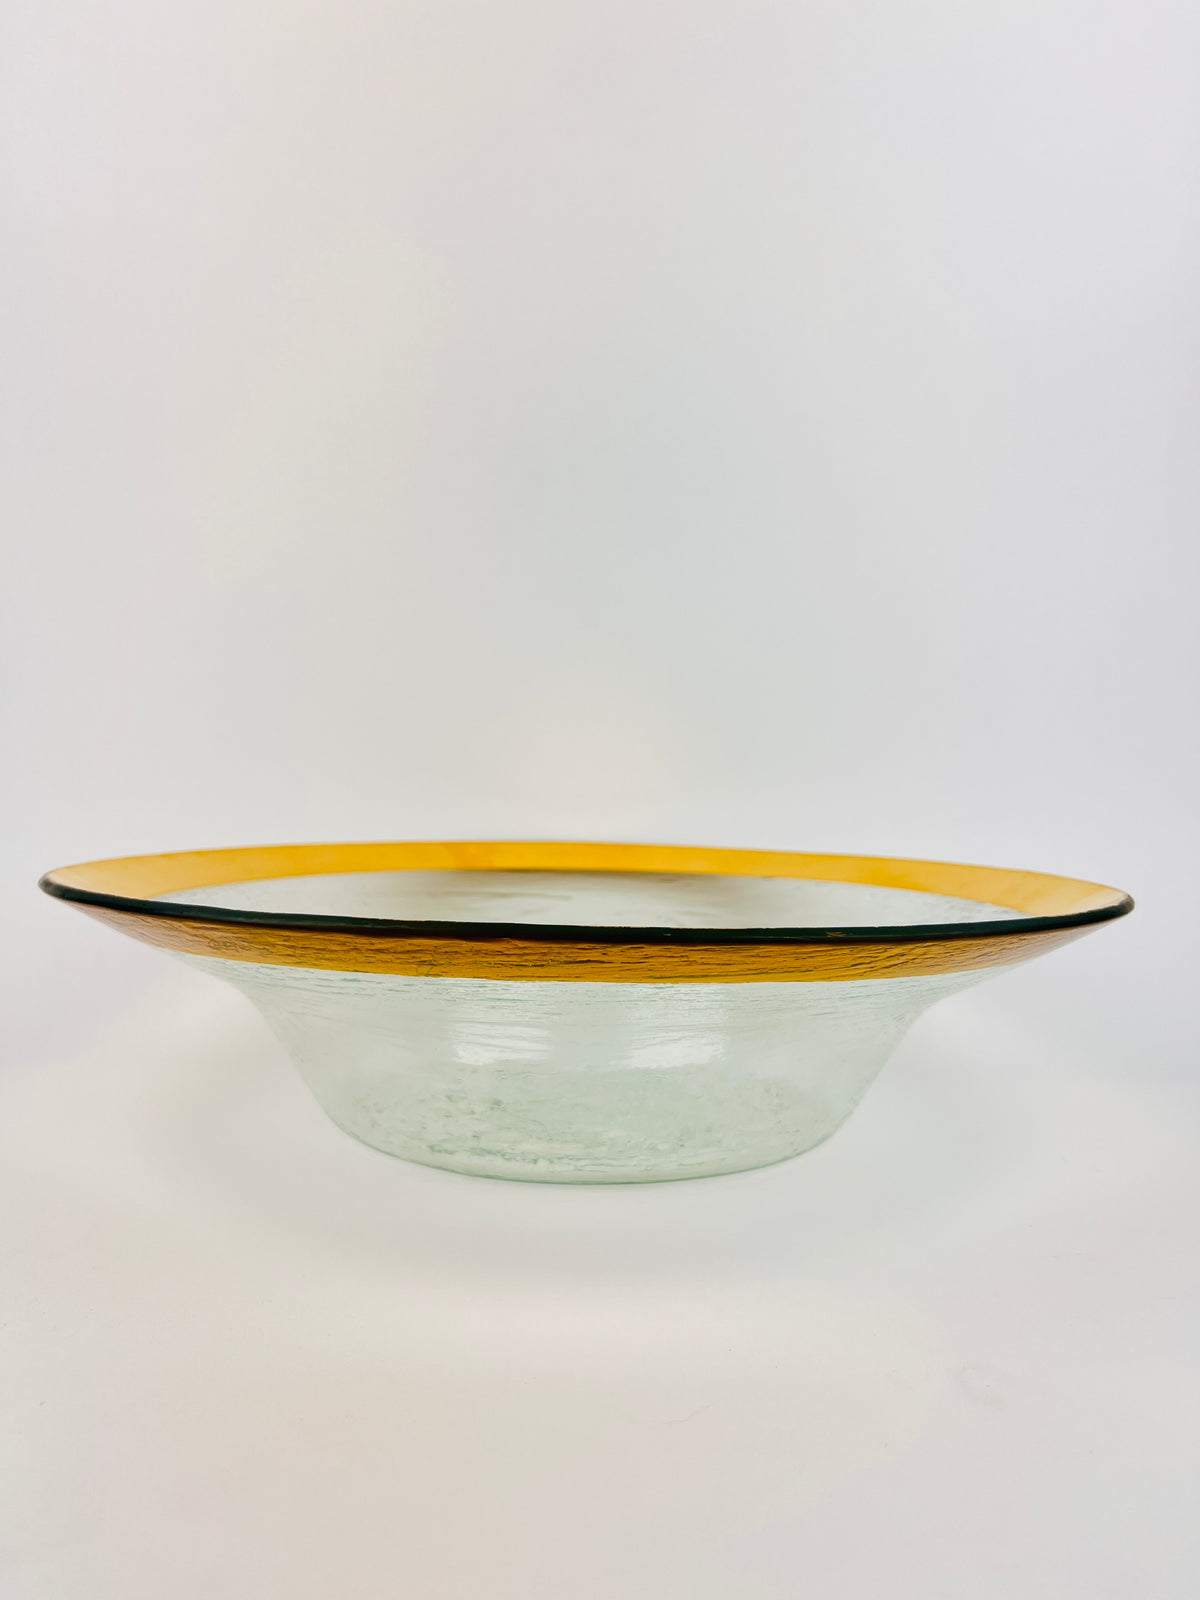 Handmade 24k Gold Plated Annieglass Bowl, 1985